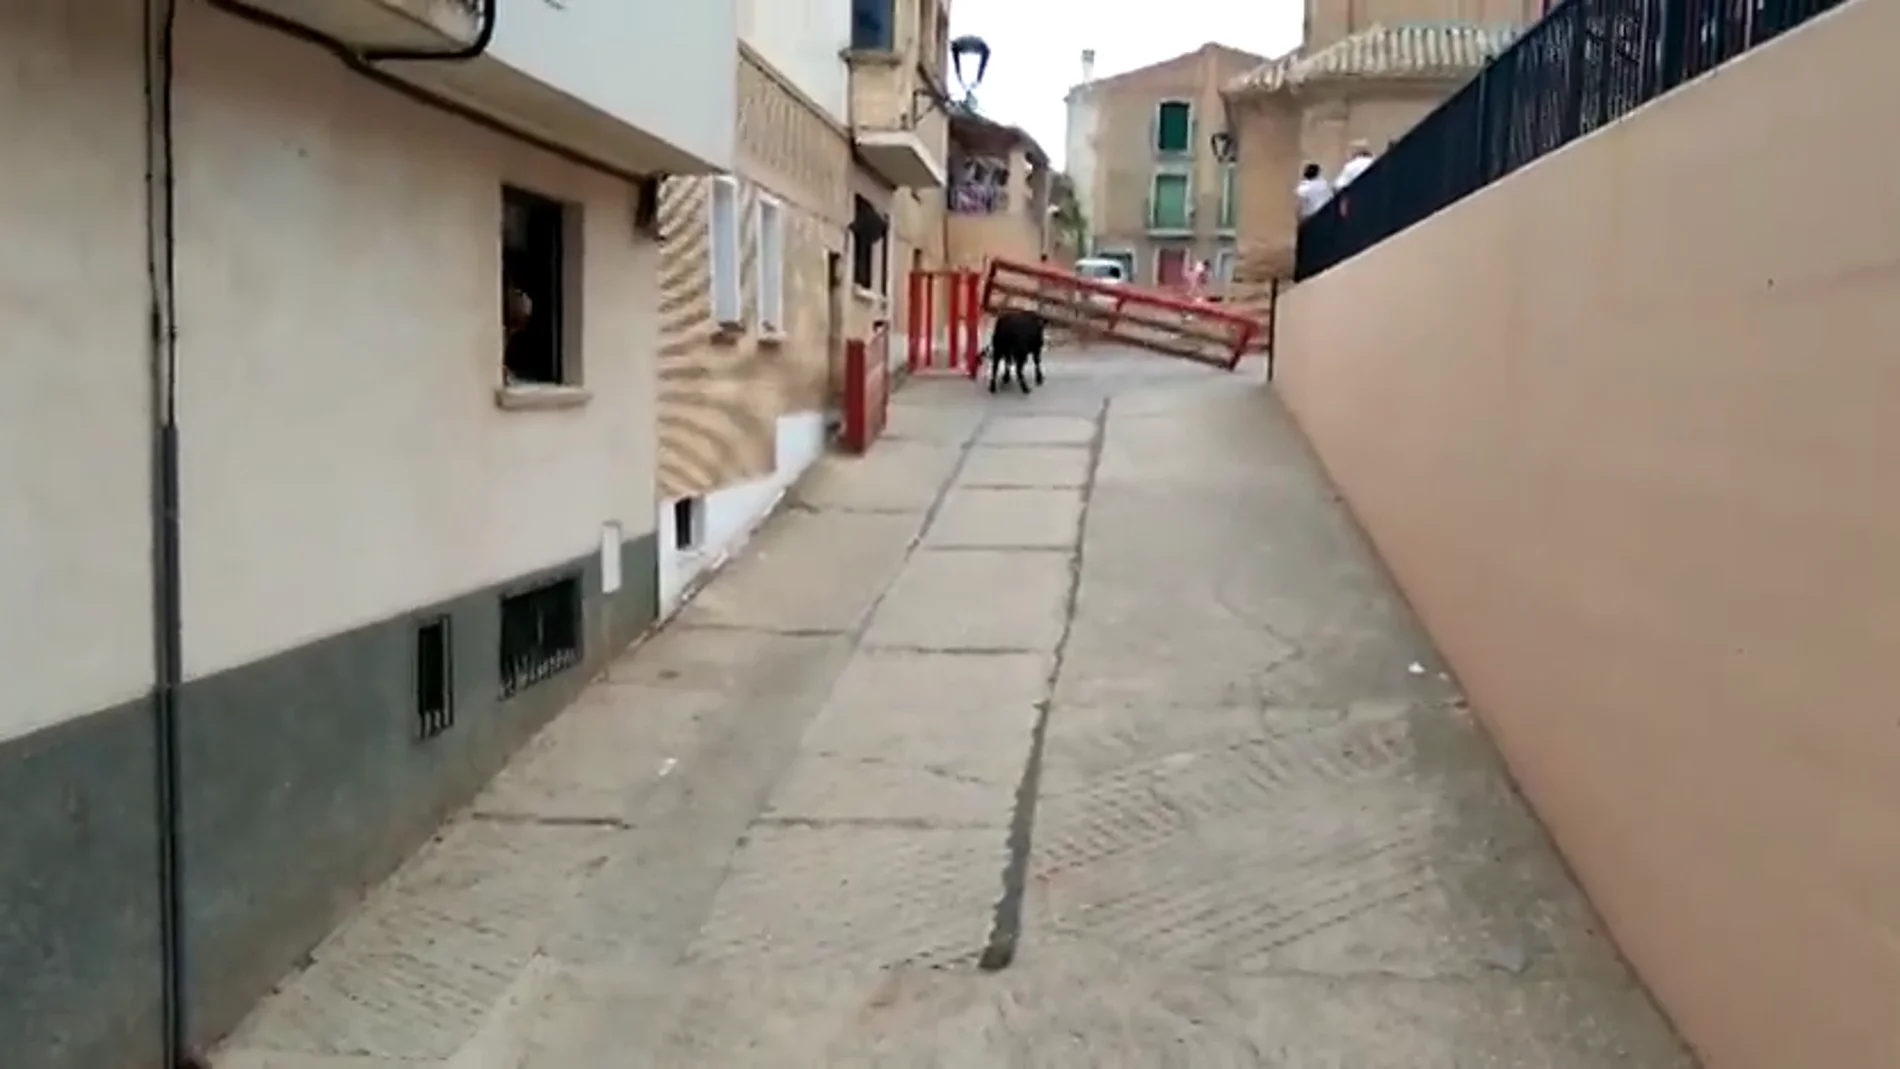 Un toro cornea a una mujer tras romper el vallado de un encierro en Milagro, Navarra